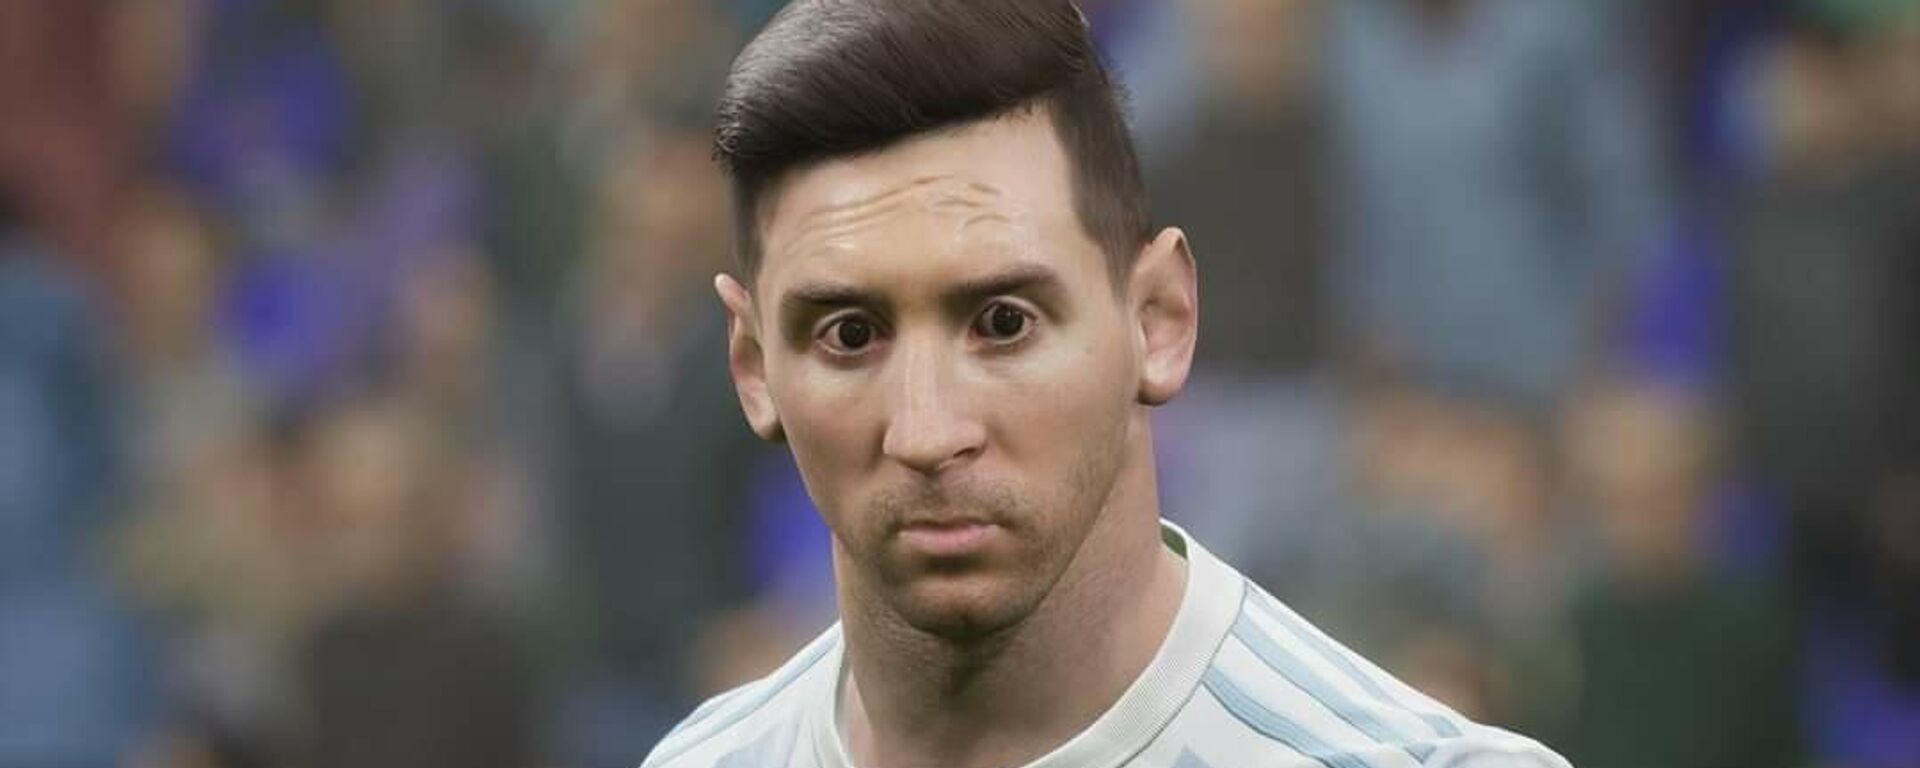 El rostro de Lionel Messi en el videojuego 'eFootball 2022' - Sputnik Mundo, 1920, 01.10.2021